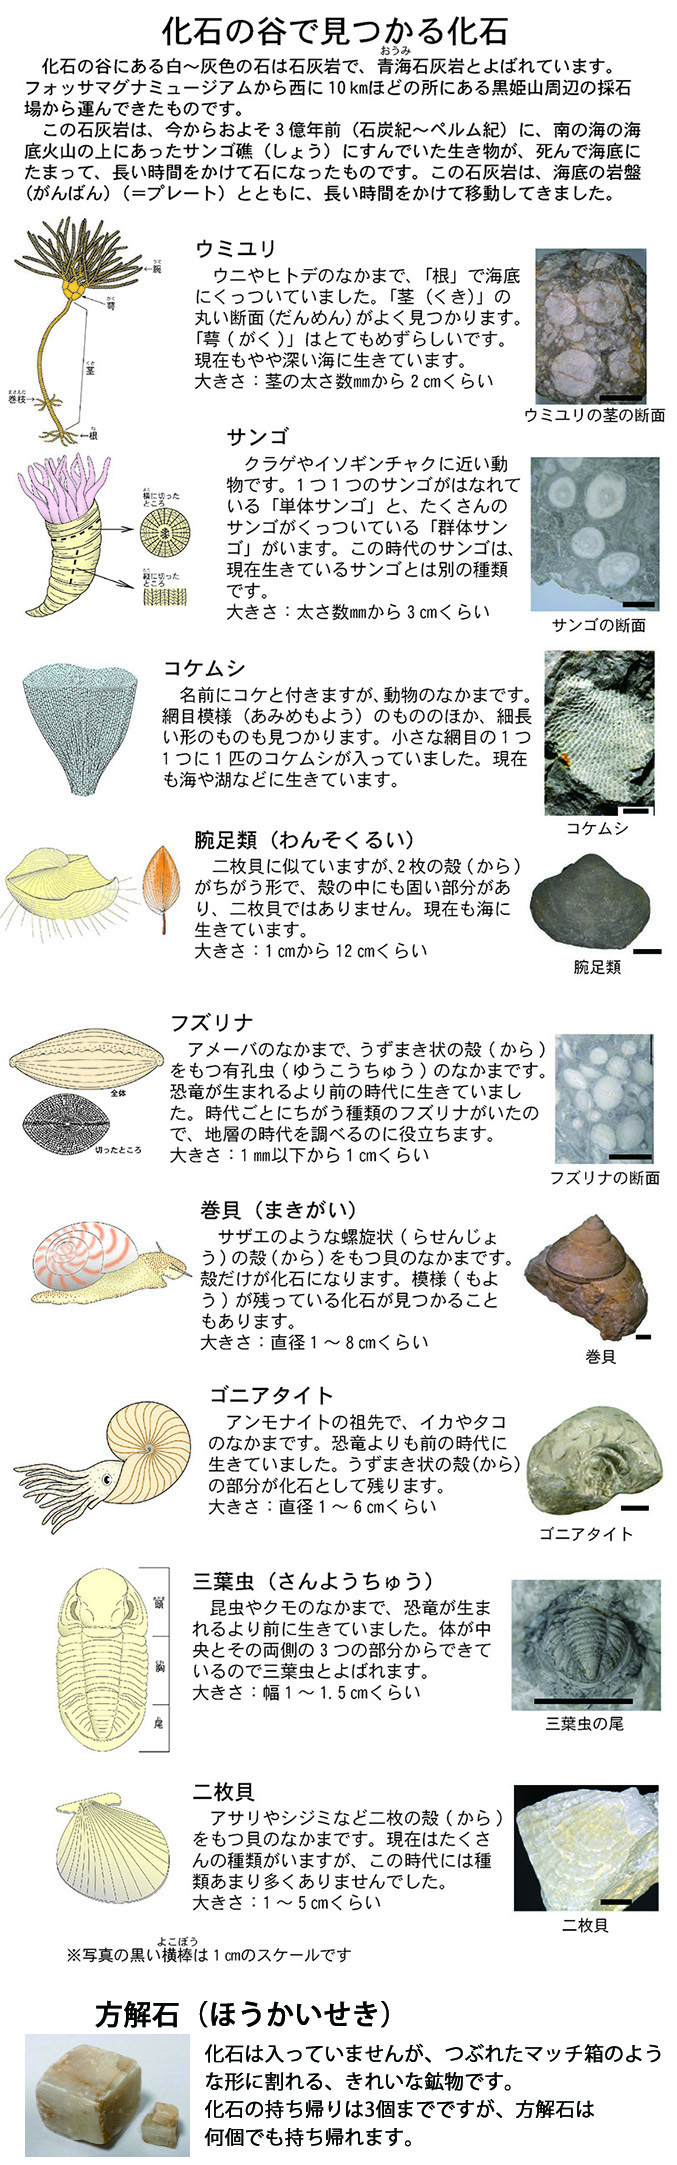 化石の谷 フォッサマグナミュージアム Fossa Magna Museum 新潟県糸魚川市のヒスイとフォッサマグナのことが楽しく学べる博物館